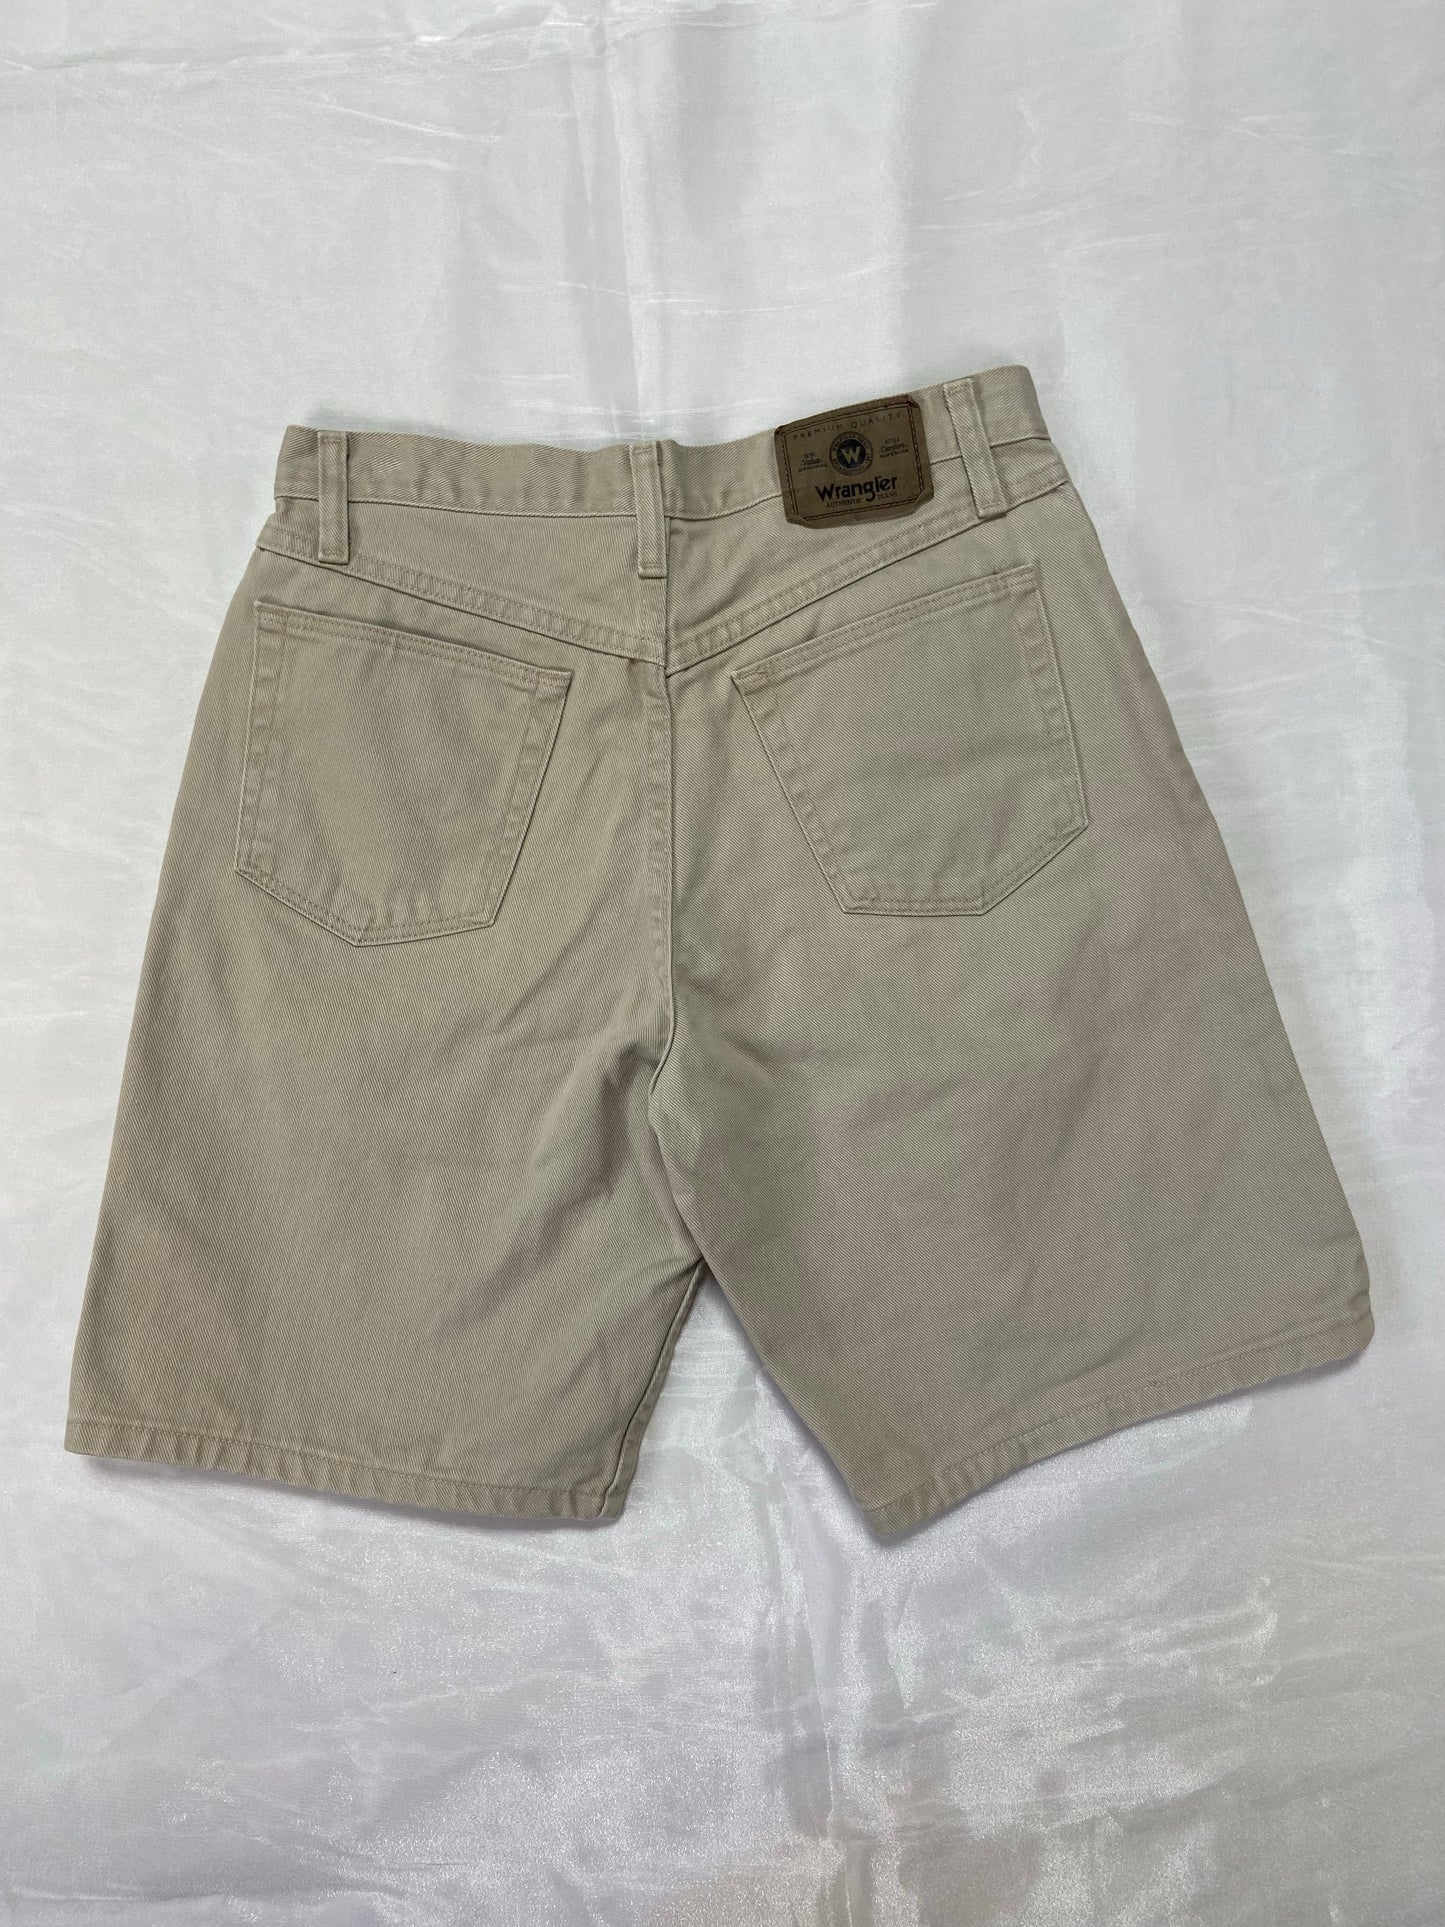 Khaki Wrangler Denim Shorts - 29”